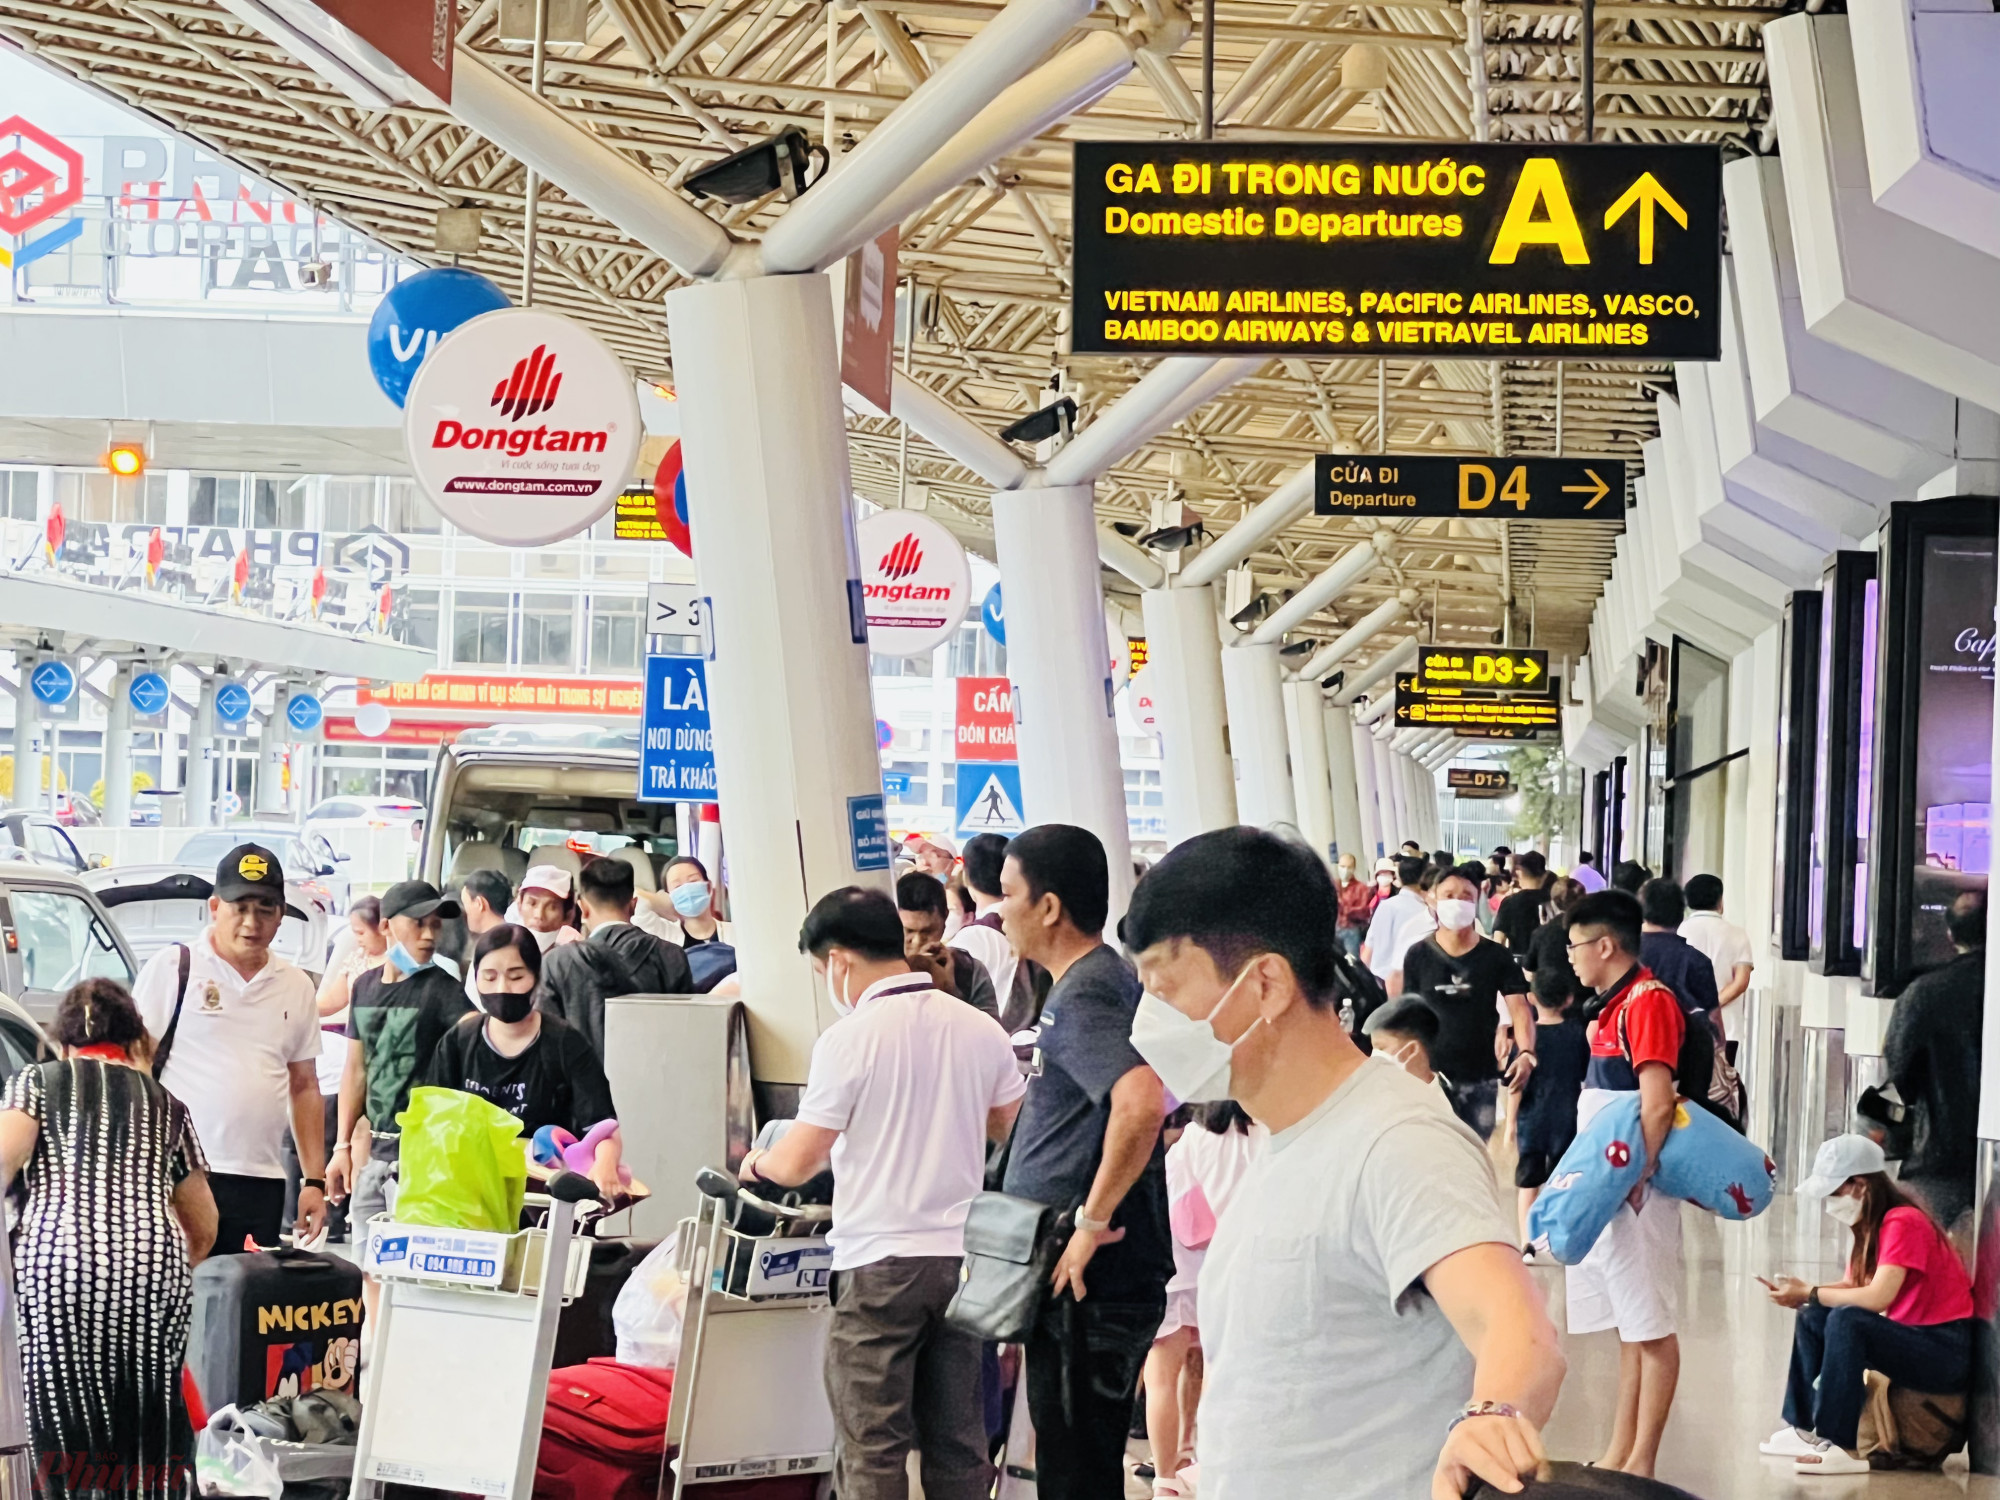 Khu vực sảnh chờ xe, trả khách của taxi của sân bay Tân Sơn Nhất một số thời điểm ùn tác khách, khi lượng khách đổ về TPHCM đông hơn sau kỳ nghỉ lễ.